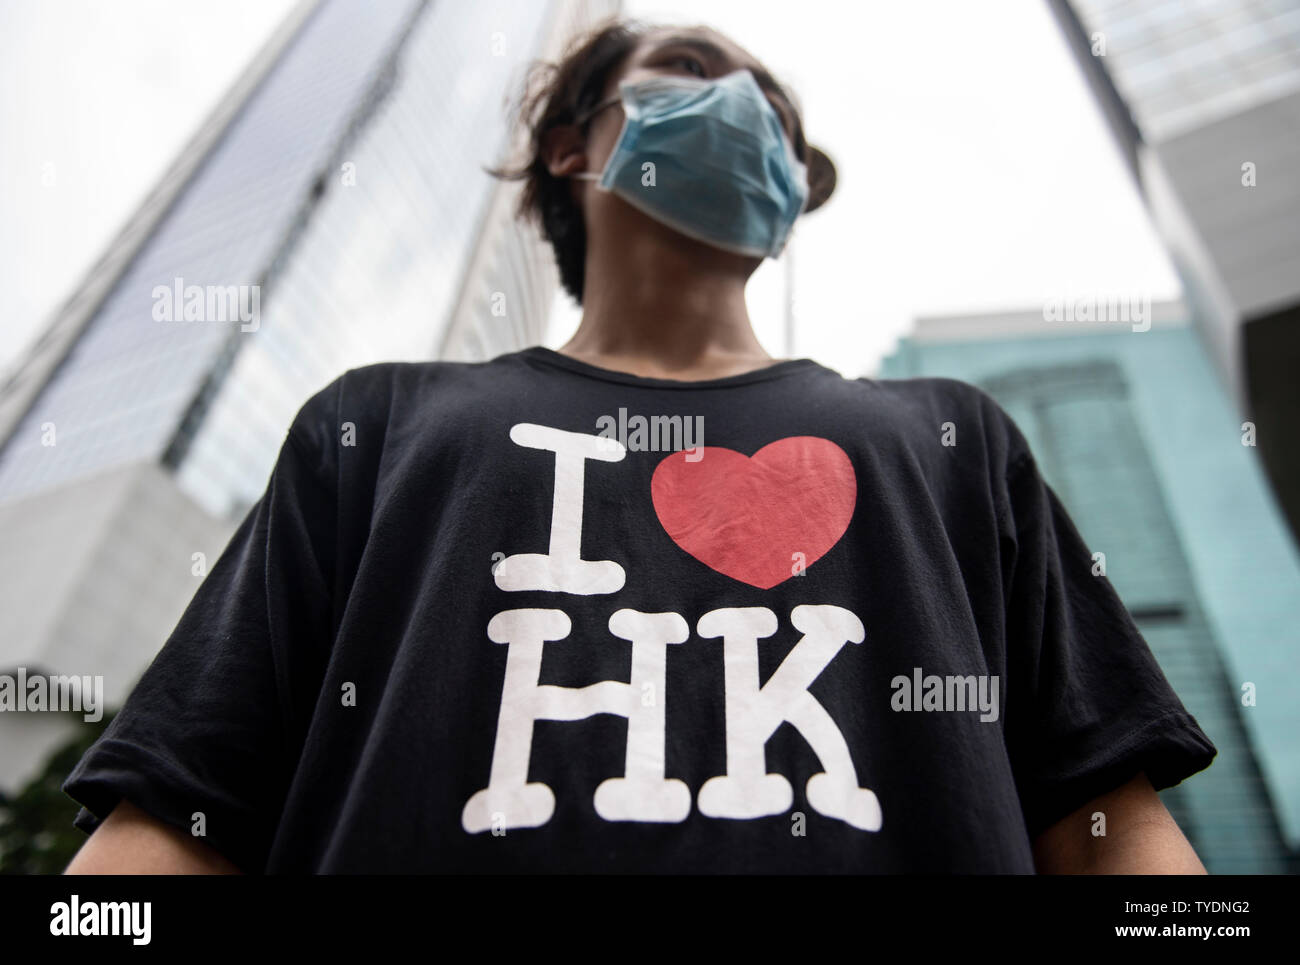 Un manifestante llevaba una camiseta negra escrita en Hong Kong me encanta  toma parte durante la manifestación.activistas protestan contra el proyecto  de ley de extradición se unió a diferentes embajadas y consulados